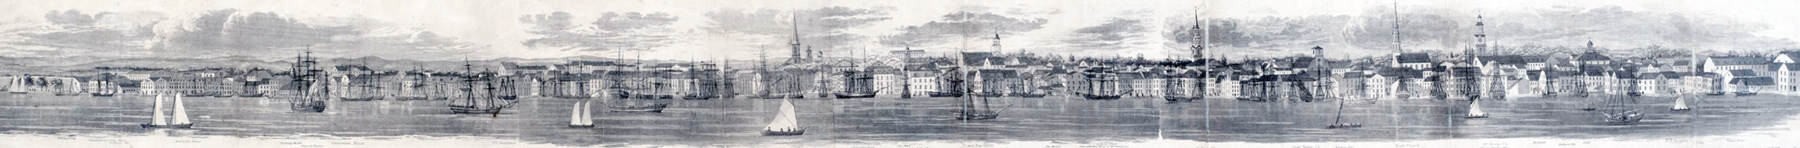 NY 18th century